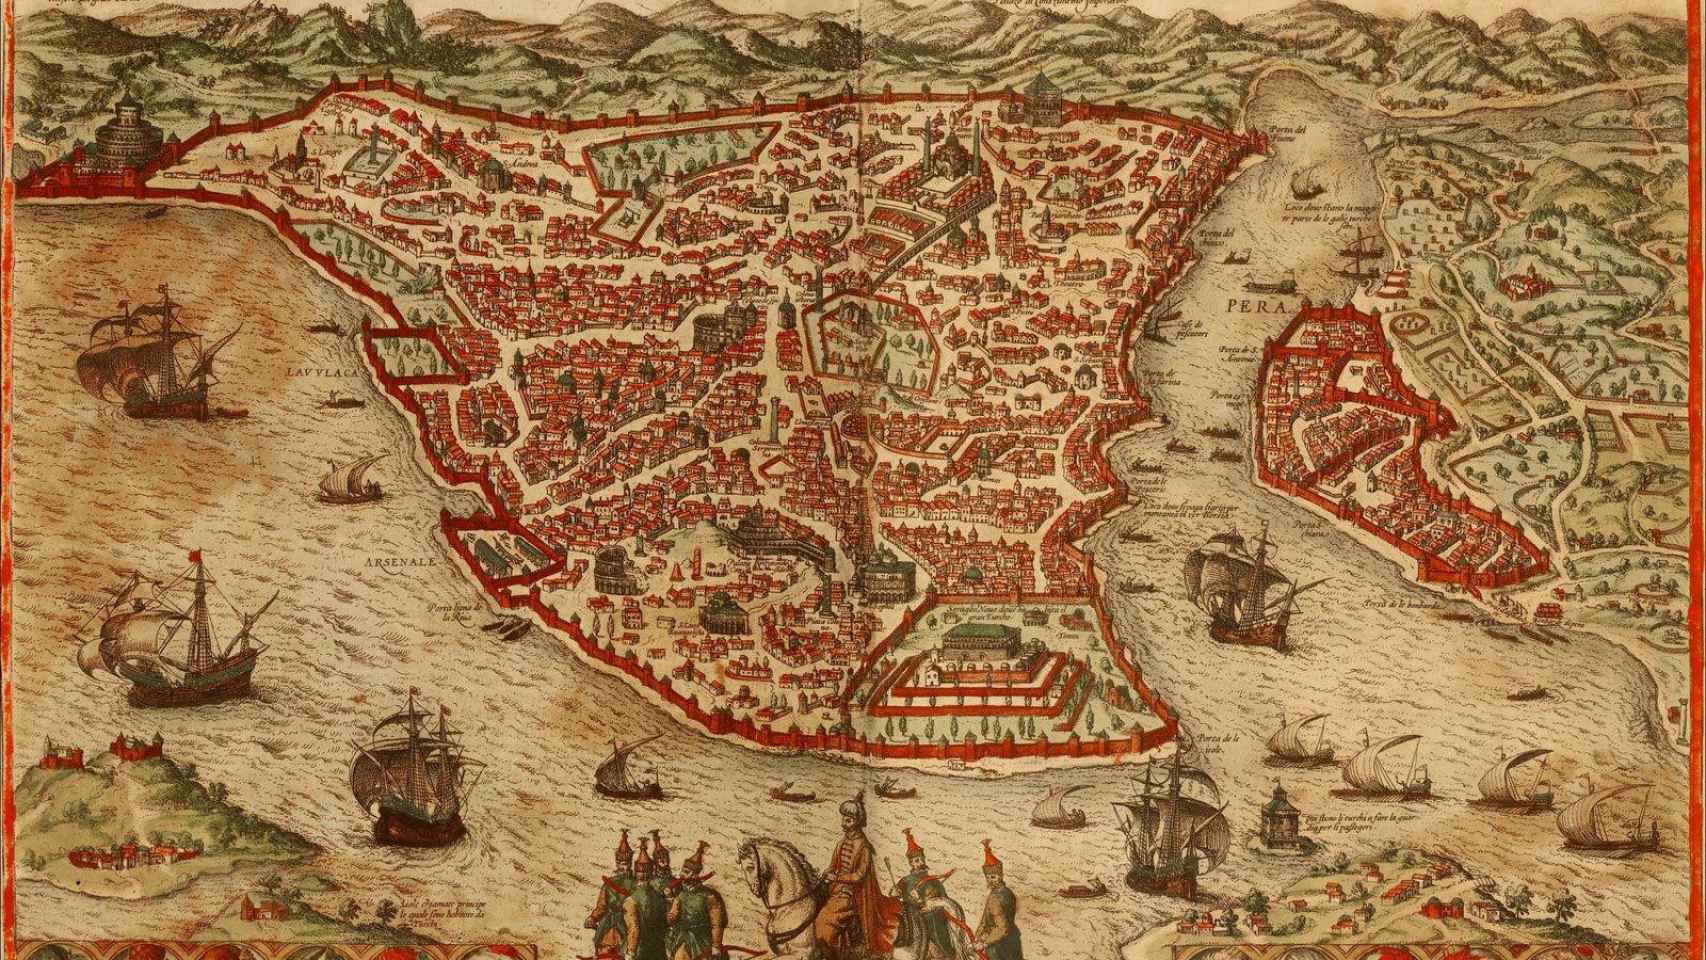 Grabado con la vista de la antigua Constantinopla visitada por González de Clavijo